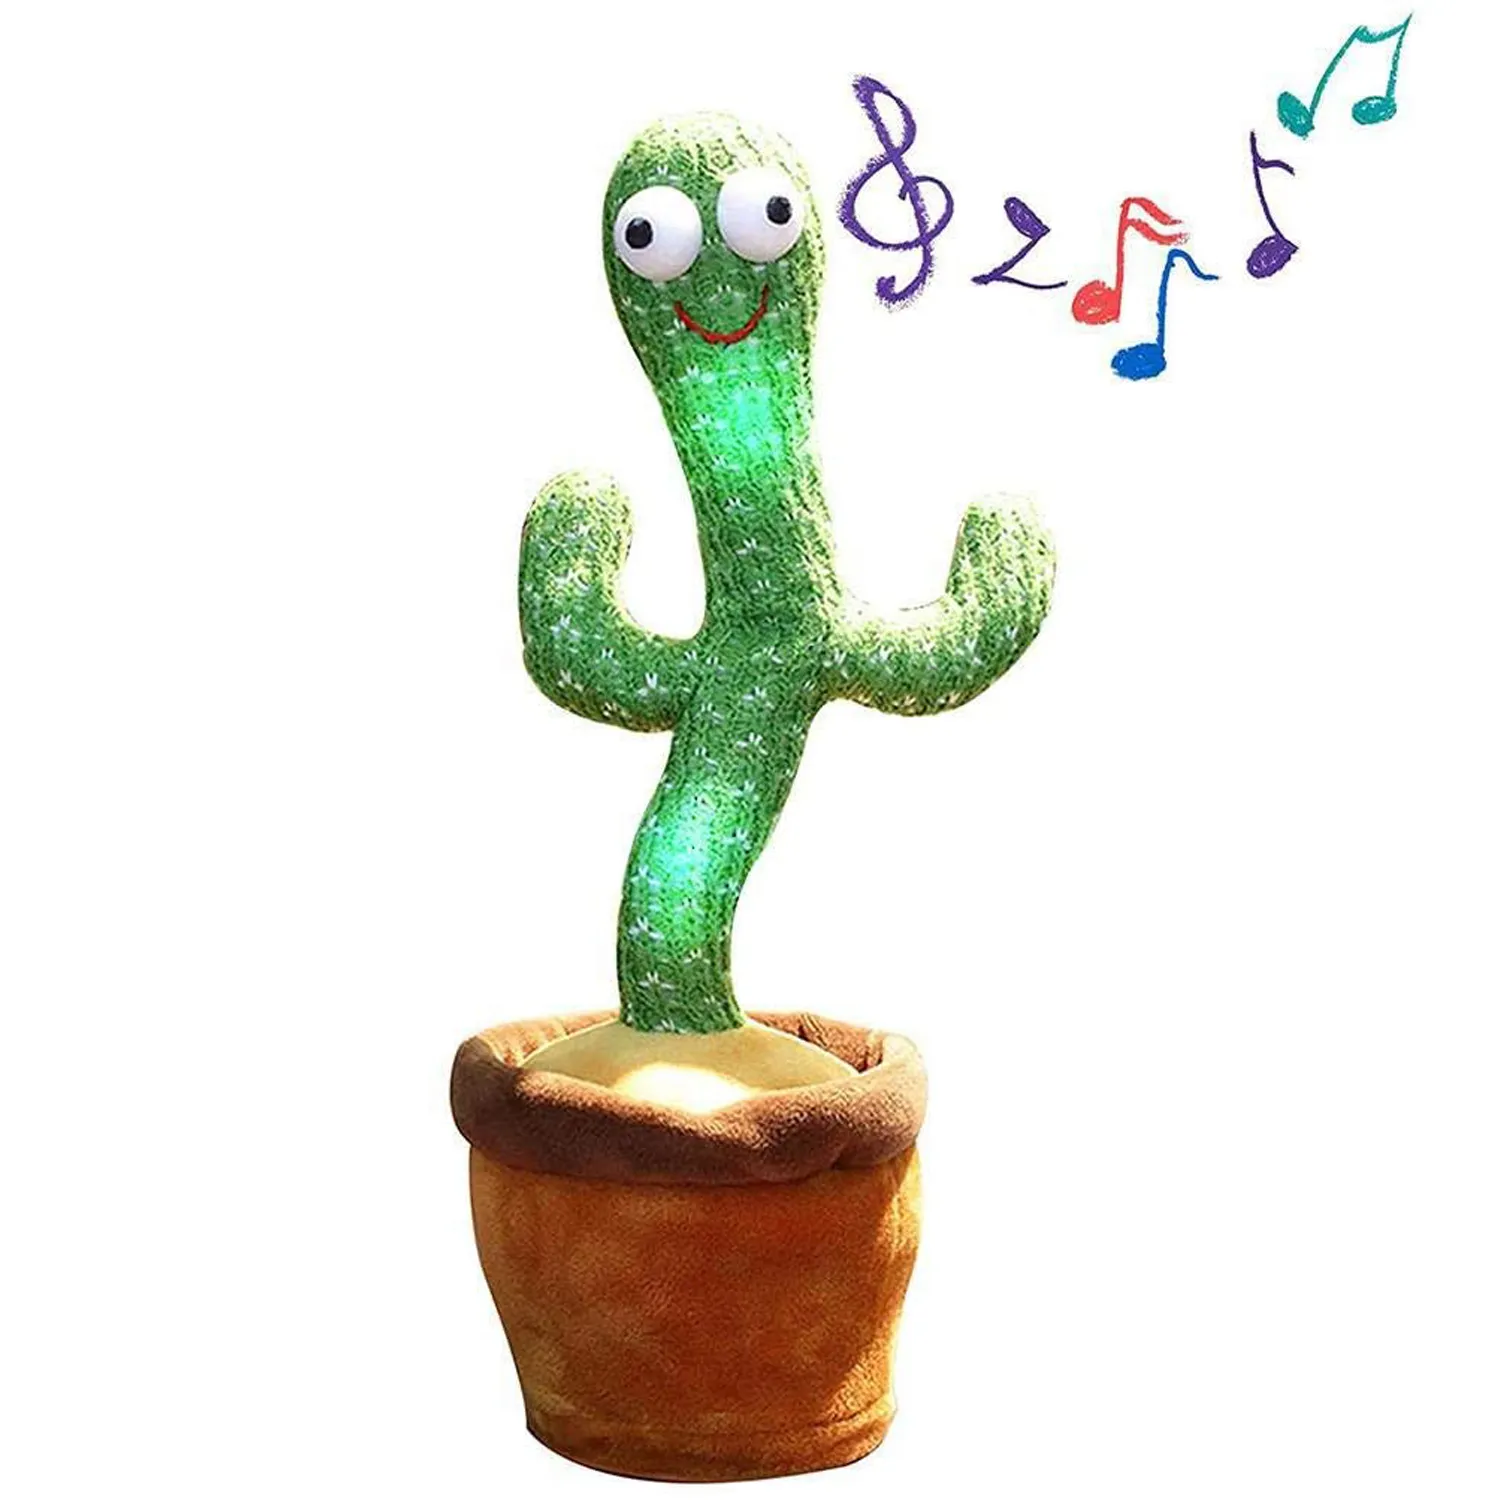 Hecion многоязычный милый мягкий цветочный горшок крутящийся танцевальный кактус кукла говорящая пение Музыка Танцующий кактус плюшевая игрушка